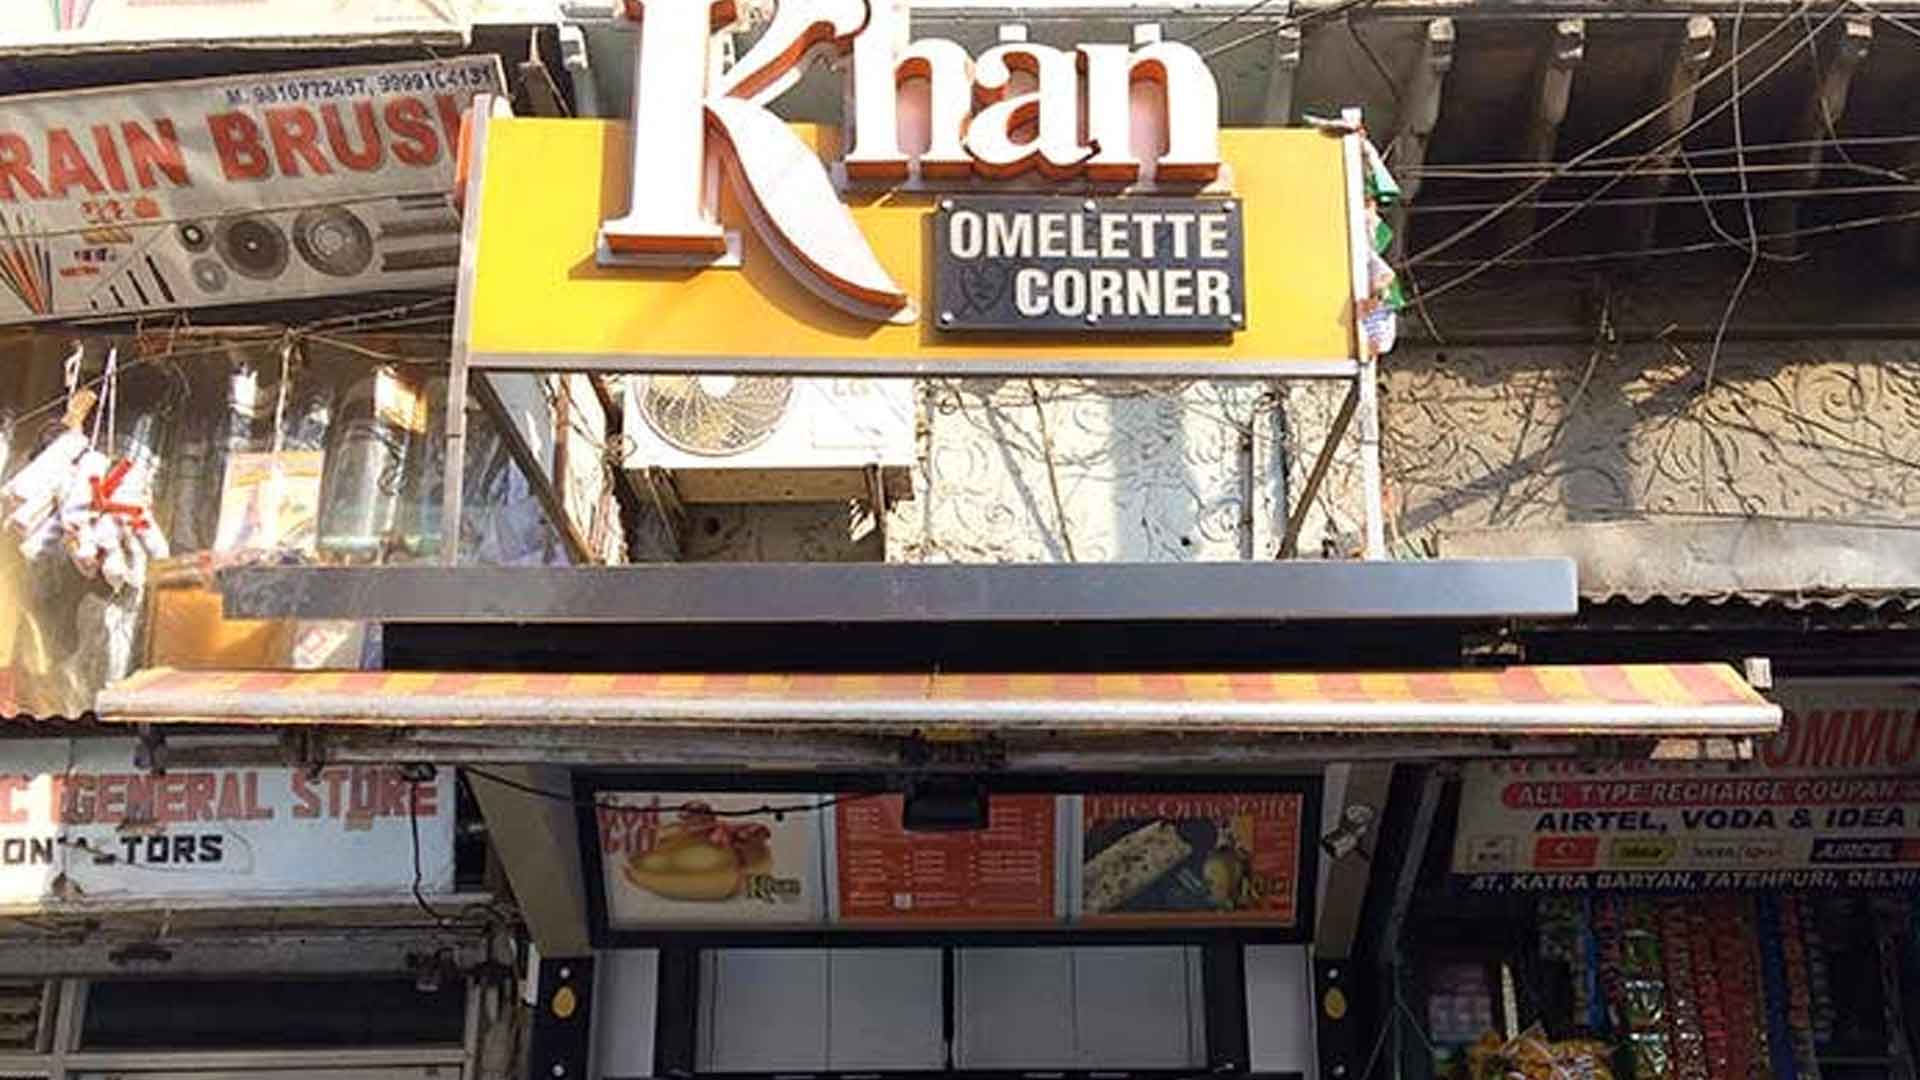 Khan-Omellete